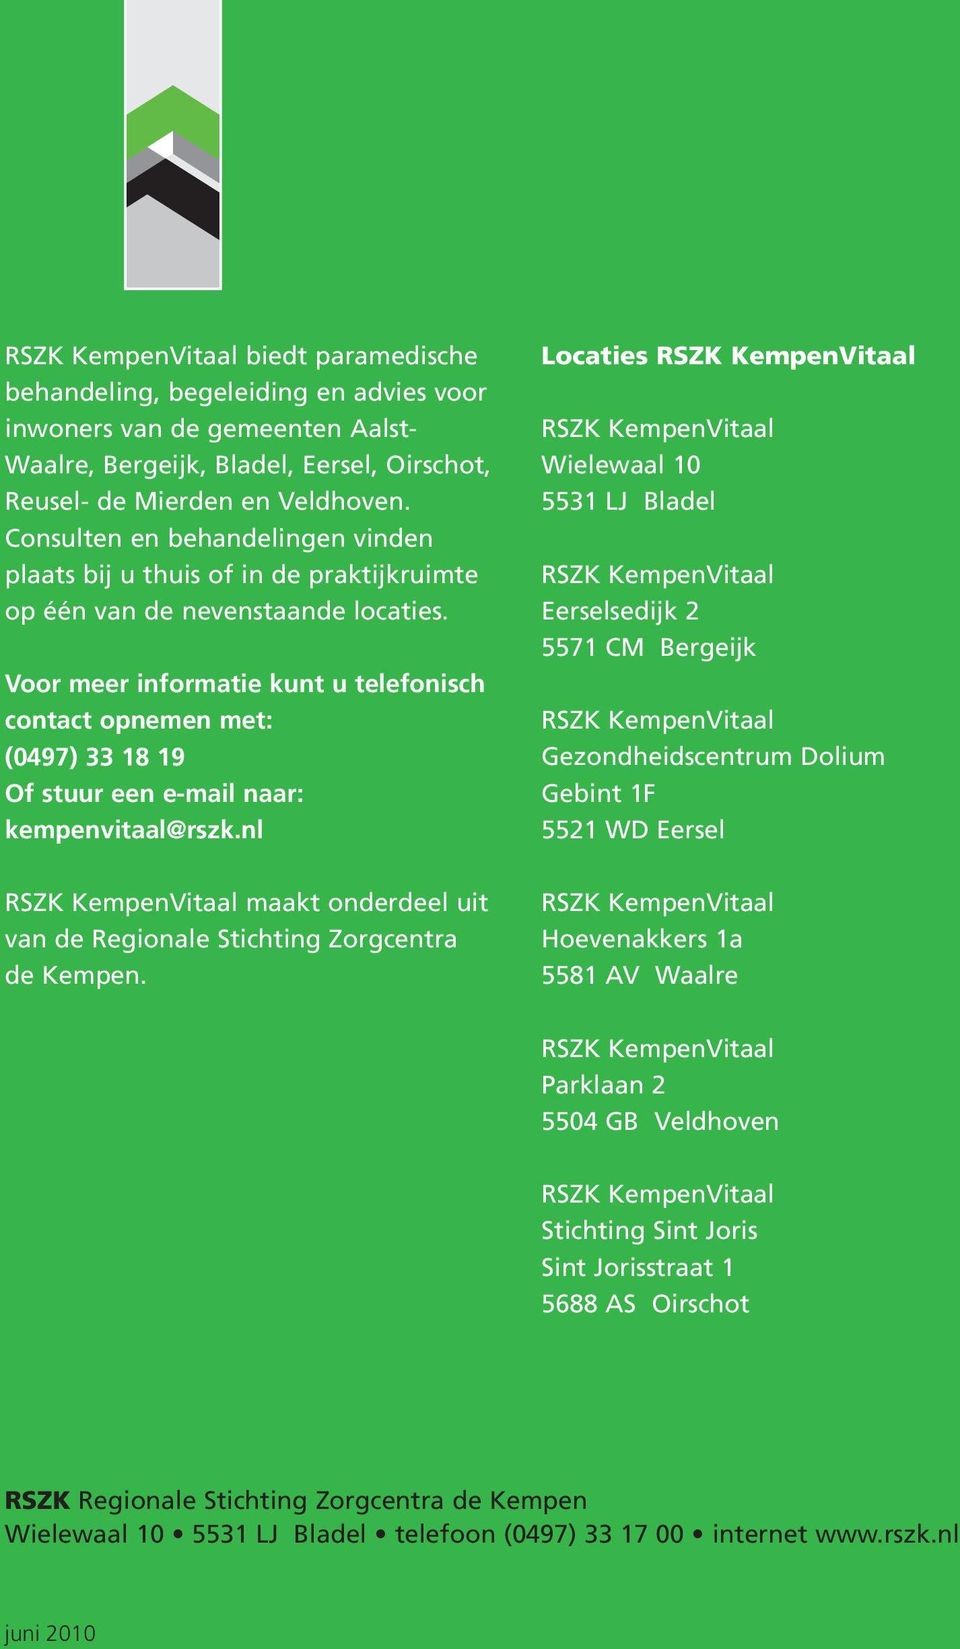 Voor meer informatie kunt u telefonisch contact opnemen met: (0497) 33 18 19 Of stuur een e-mail naar: kempenvitaal@rszk.nl maakt onderdeel uit van de Regionale Stichting Zorgcentra de Kempen.